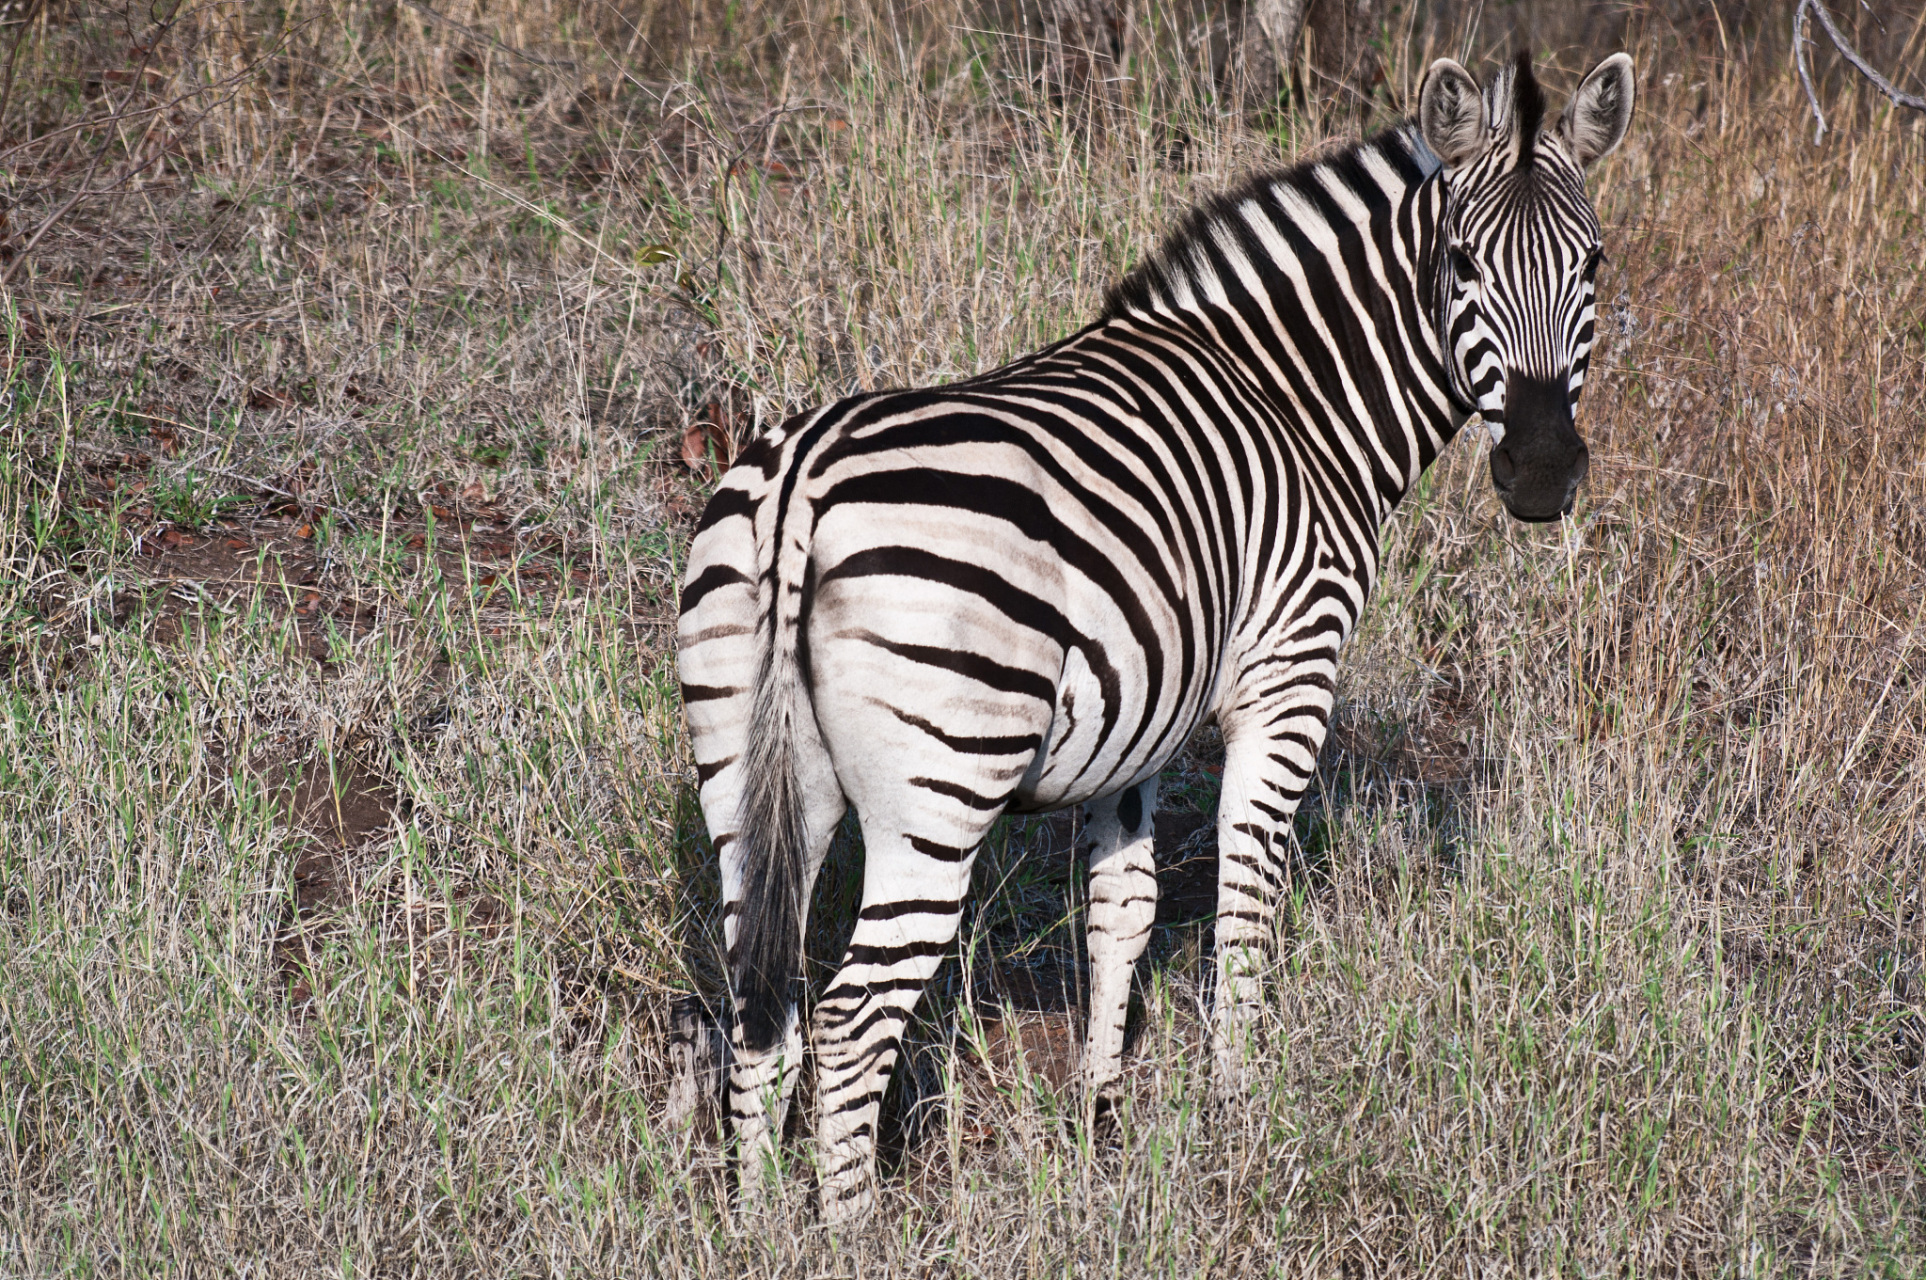 意大利的标志性动物是斑马(equus zebra)